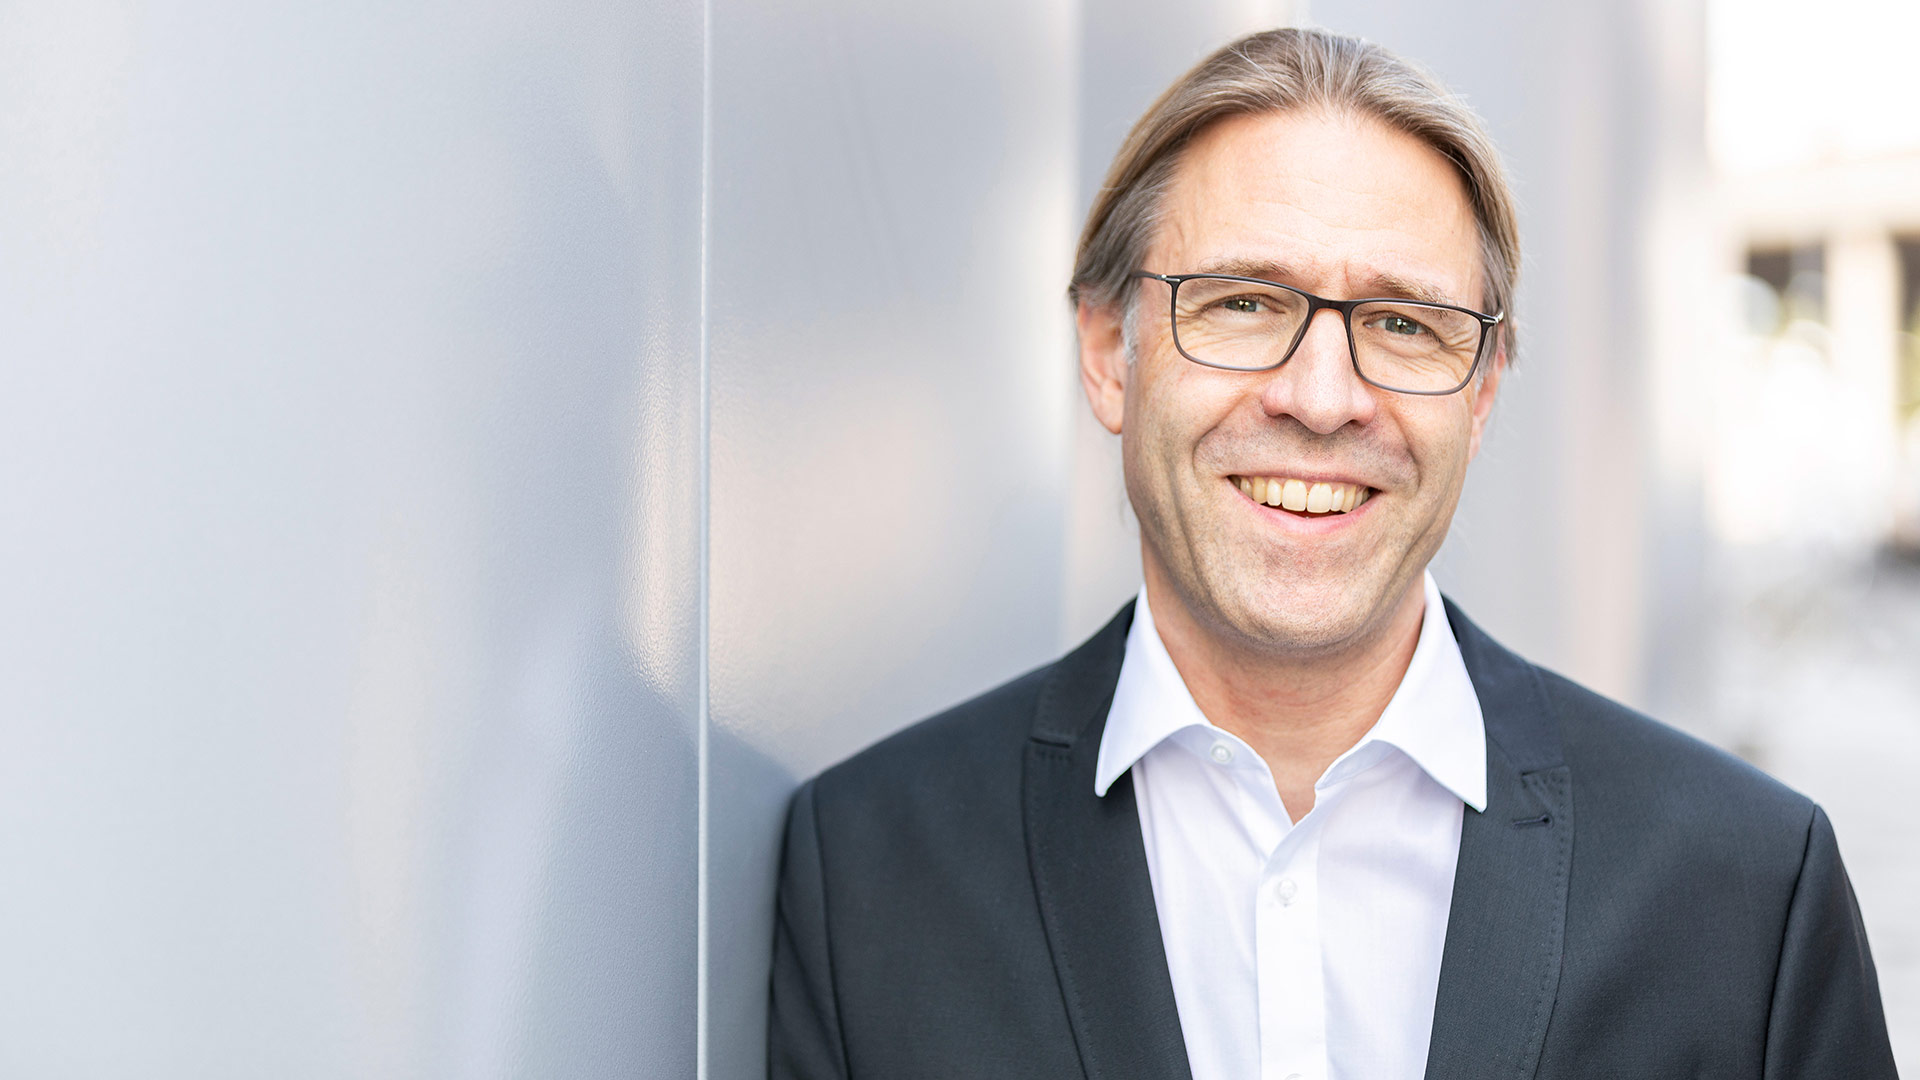 Der Management-Arzt Dr. Franz Sperlich zu Gast bei Gabor Steingart & Team